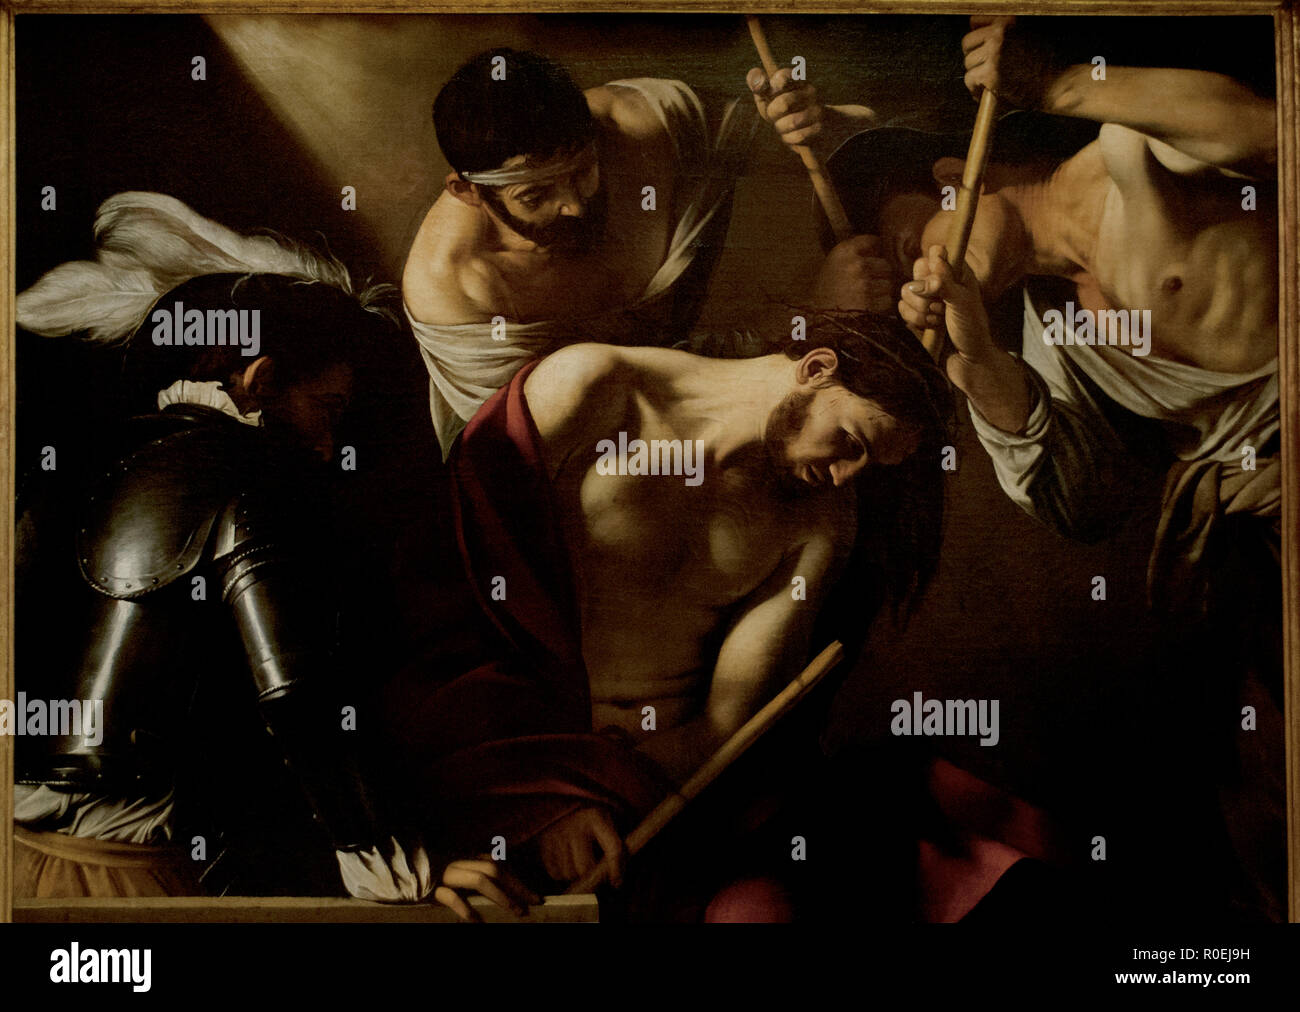 Caravaggio (1571-1610). Italienischer Maler. Die Dornenkrönung, 1604. Öl auf Leinwand. 127 x 165,5 cm. Barock Stil. Kunsthistorisches Museum, Wien. Österreich. Stockfoto